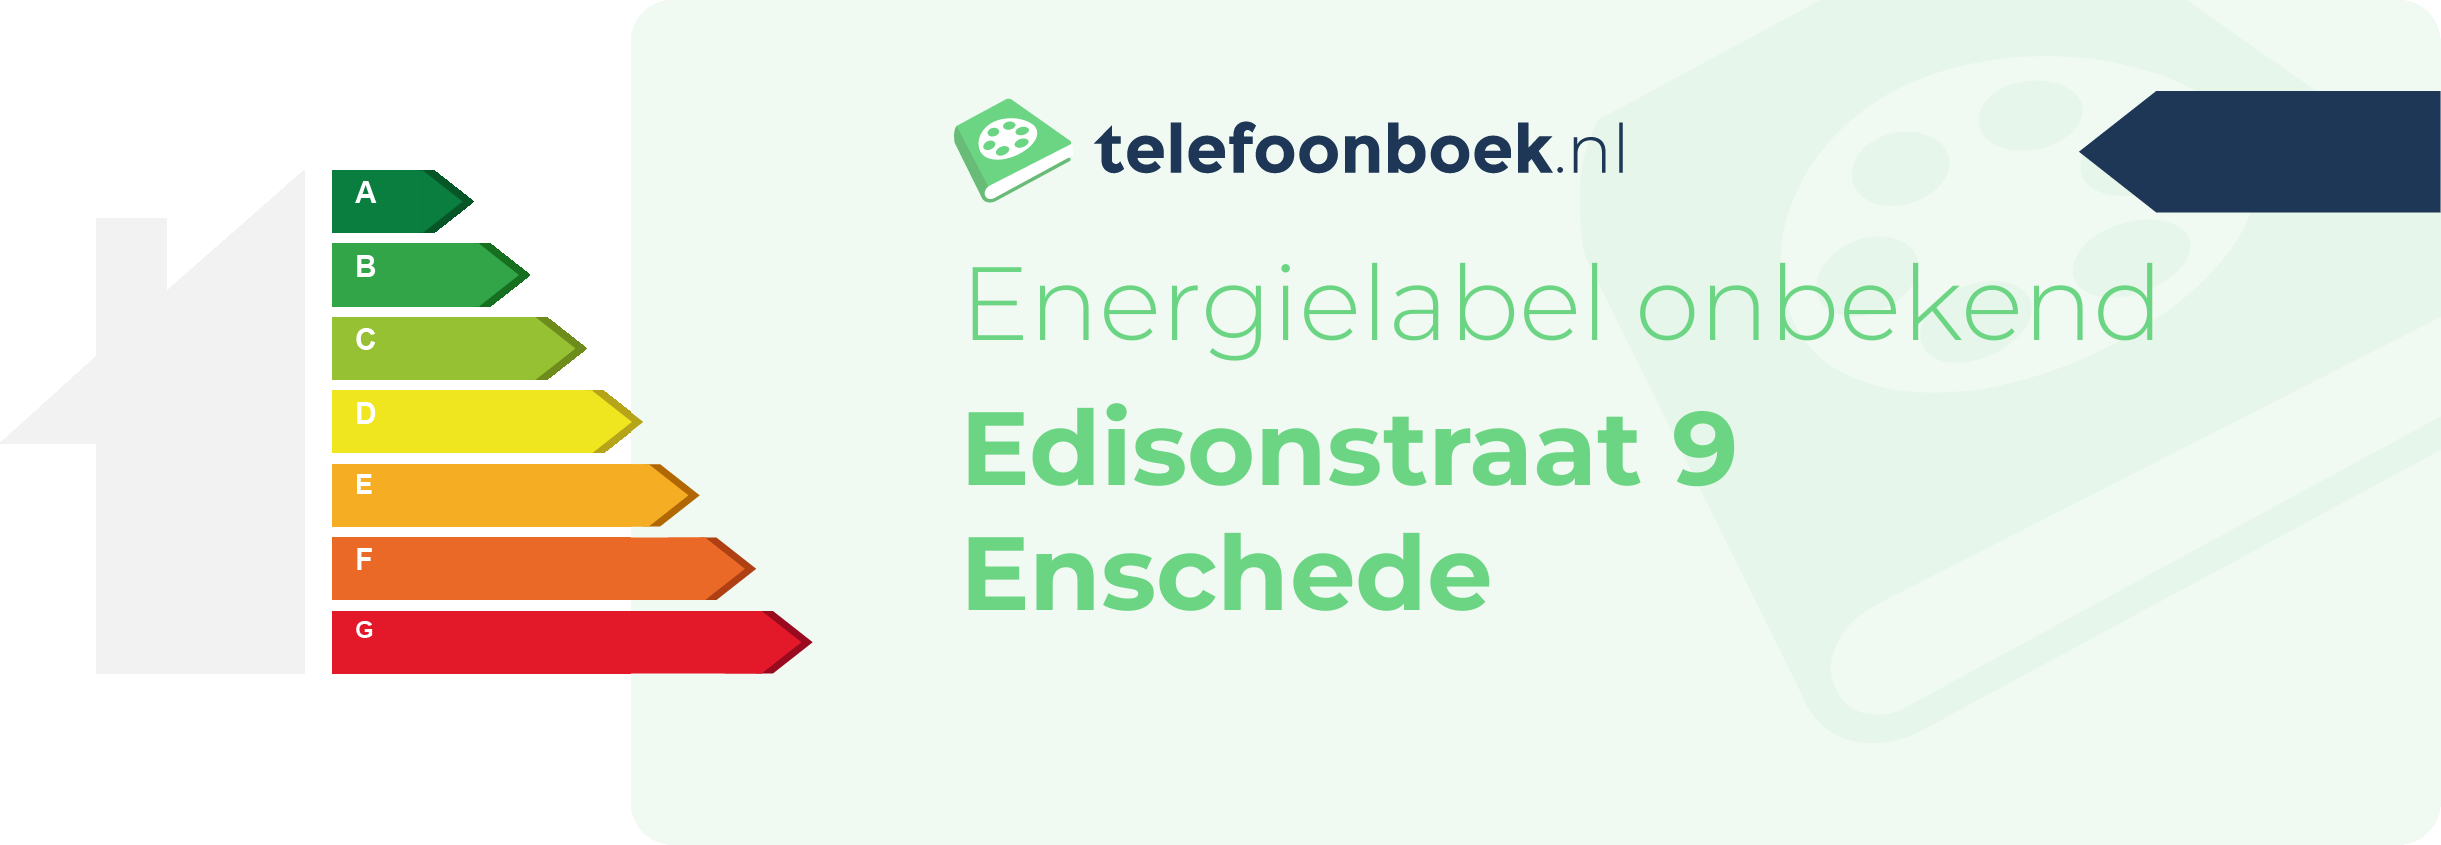 Energielabel Edisonstraat 9 Enschede